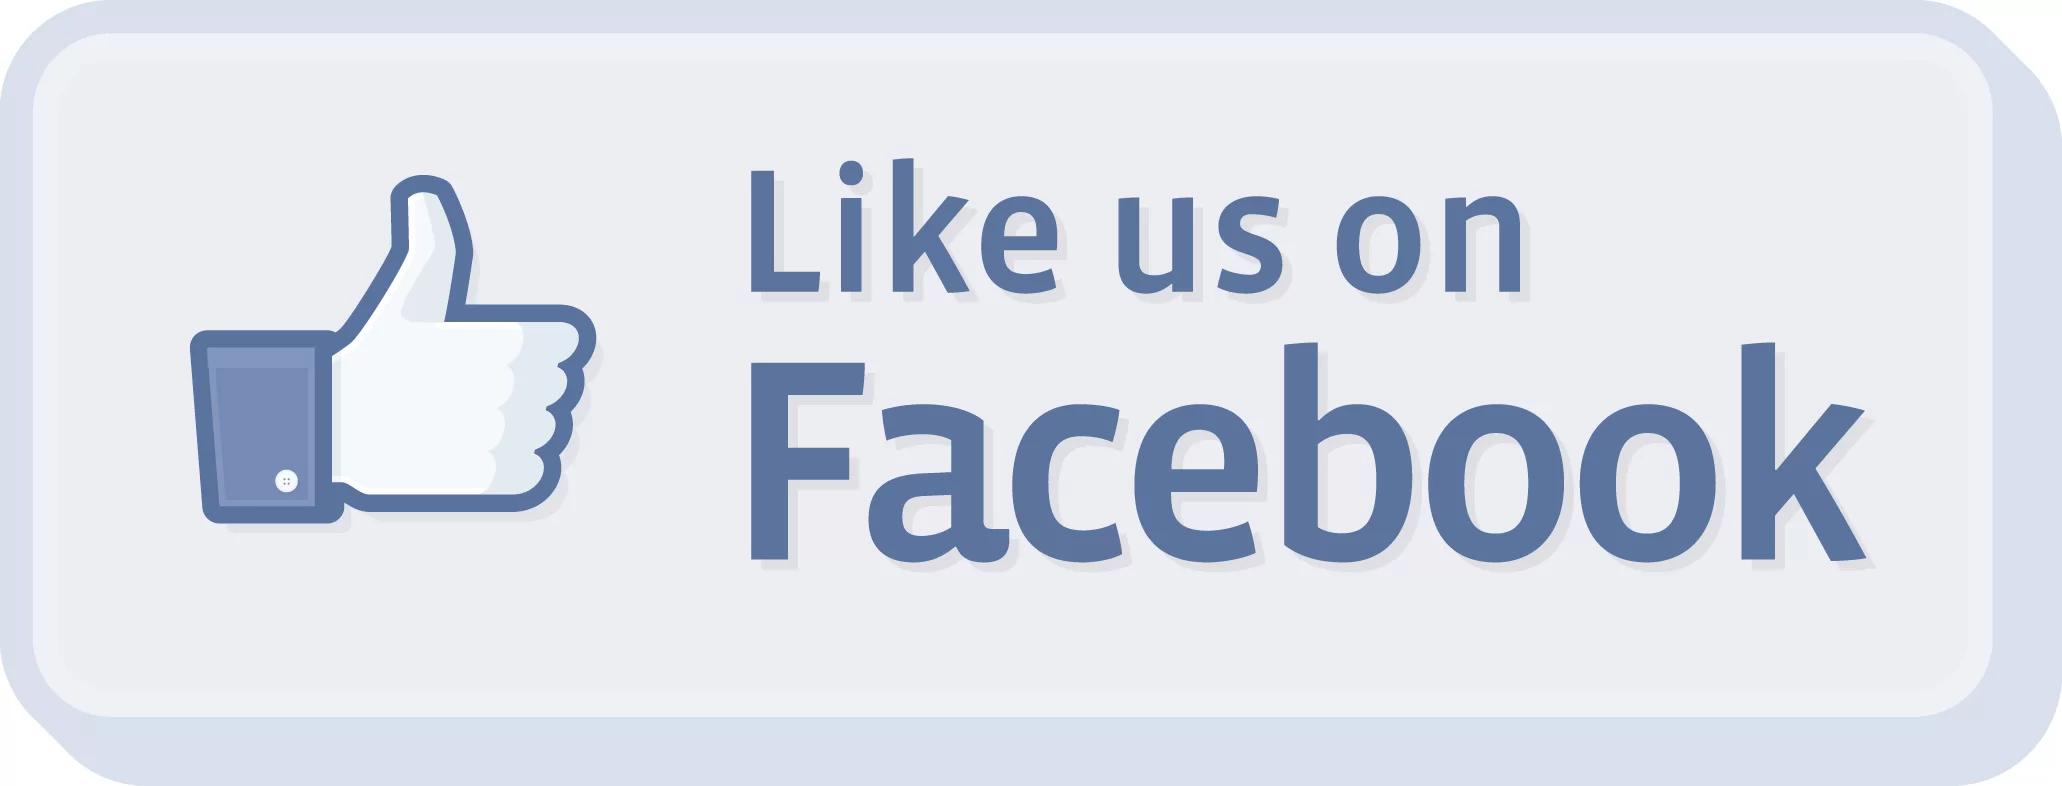 Like us on facebook logo. Jpg